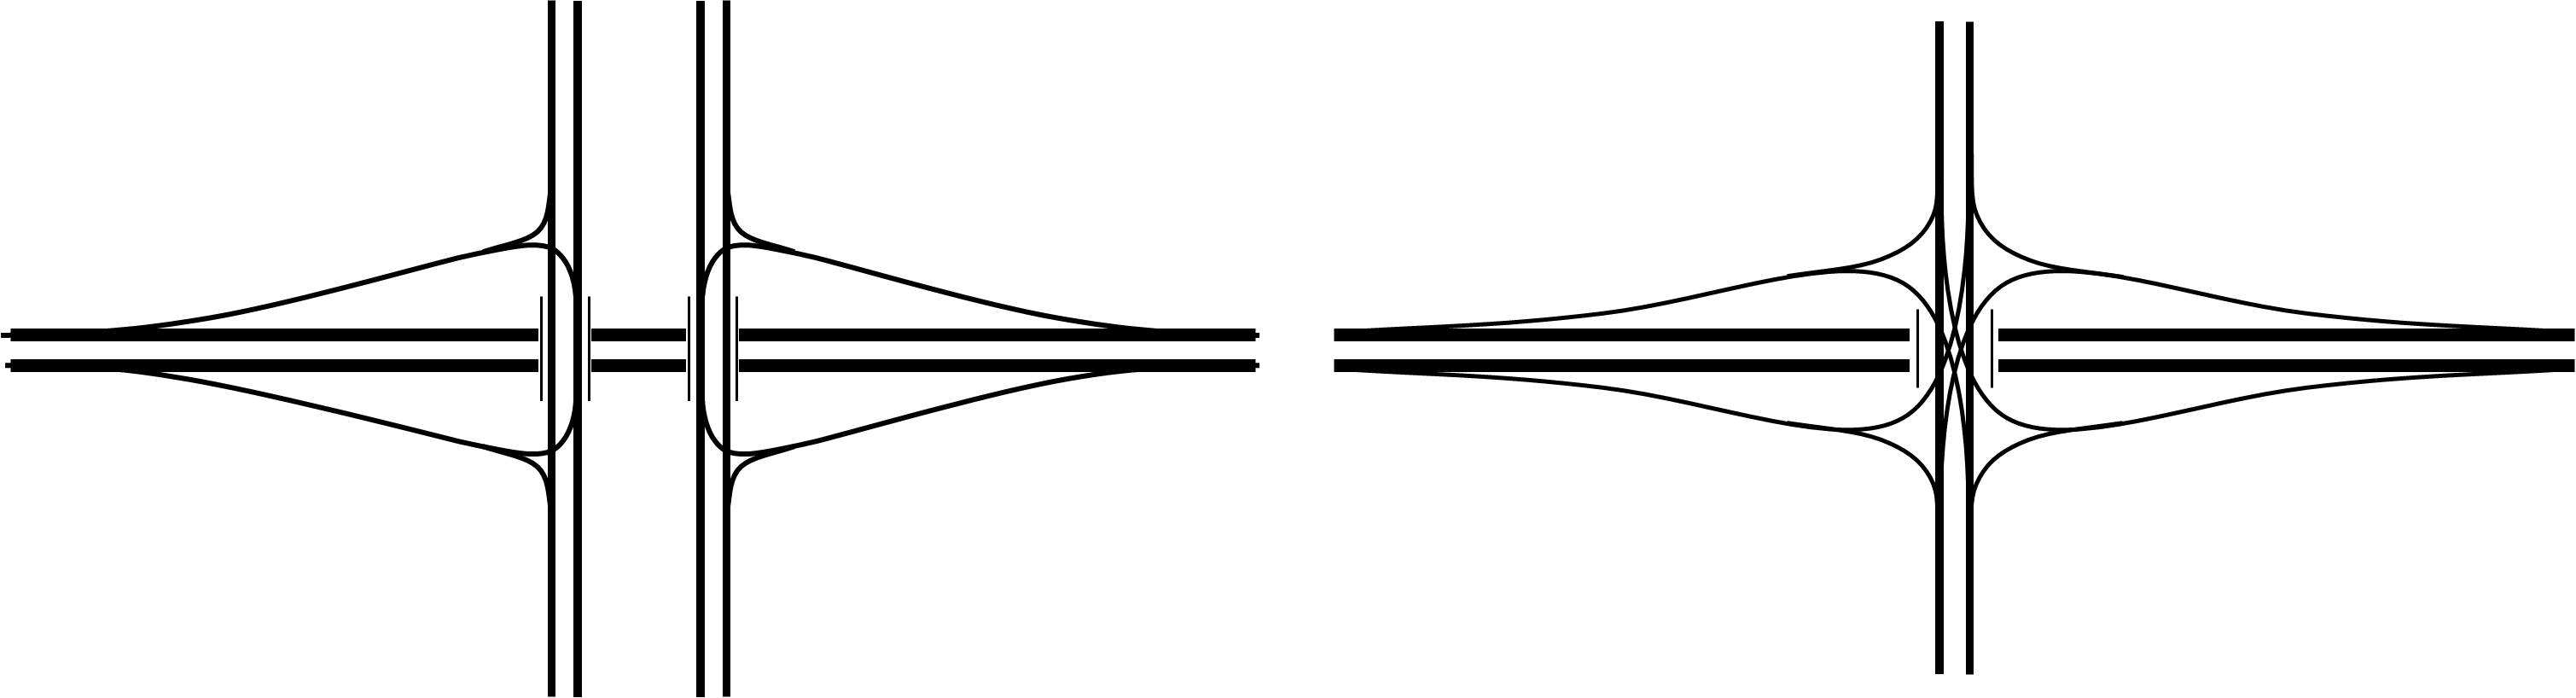 雙向通行菱形（左），單點式菱形（右）